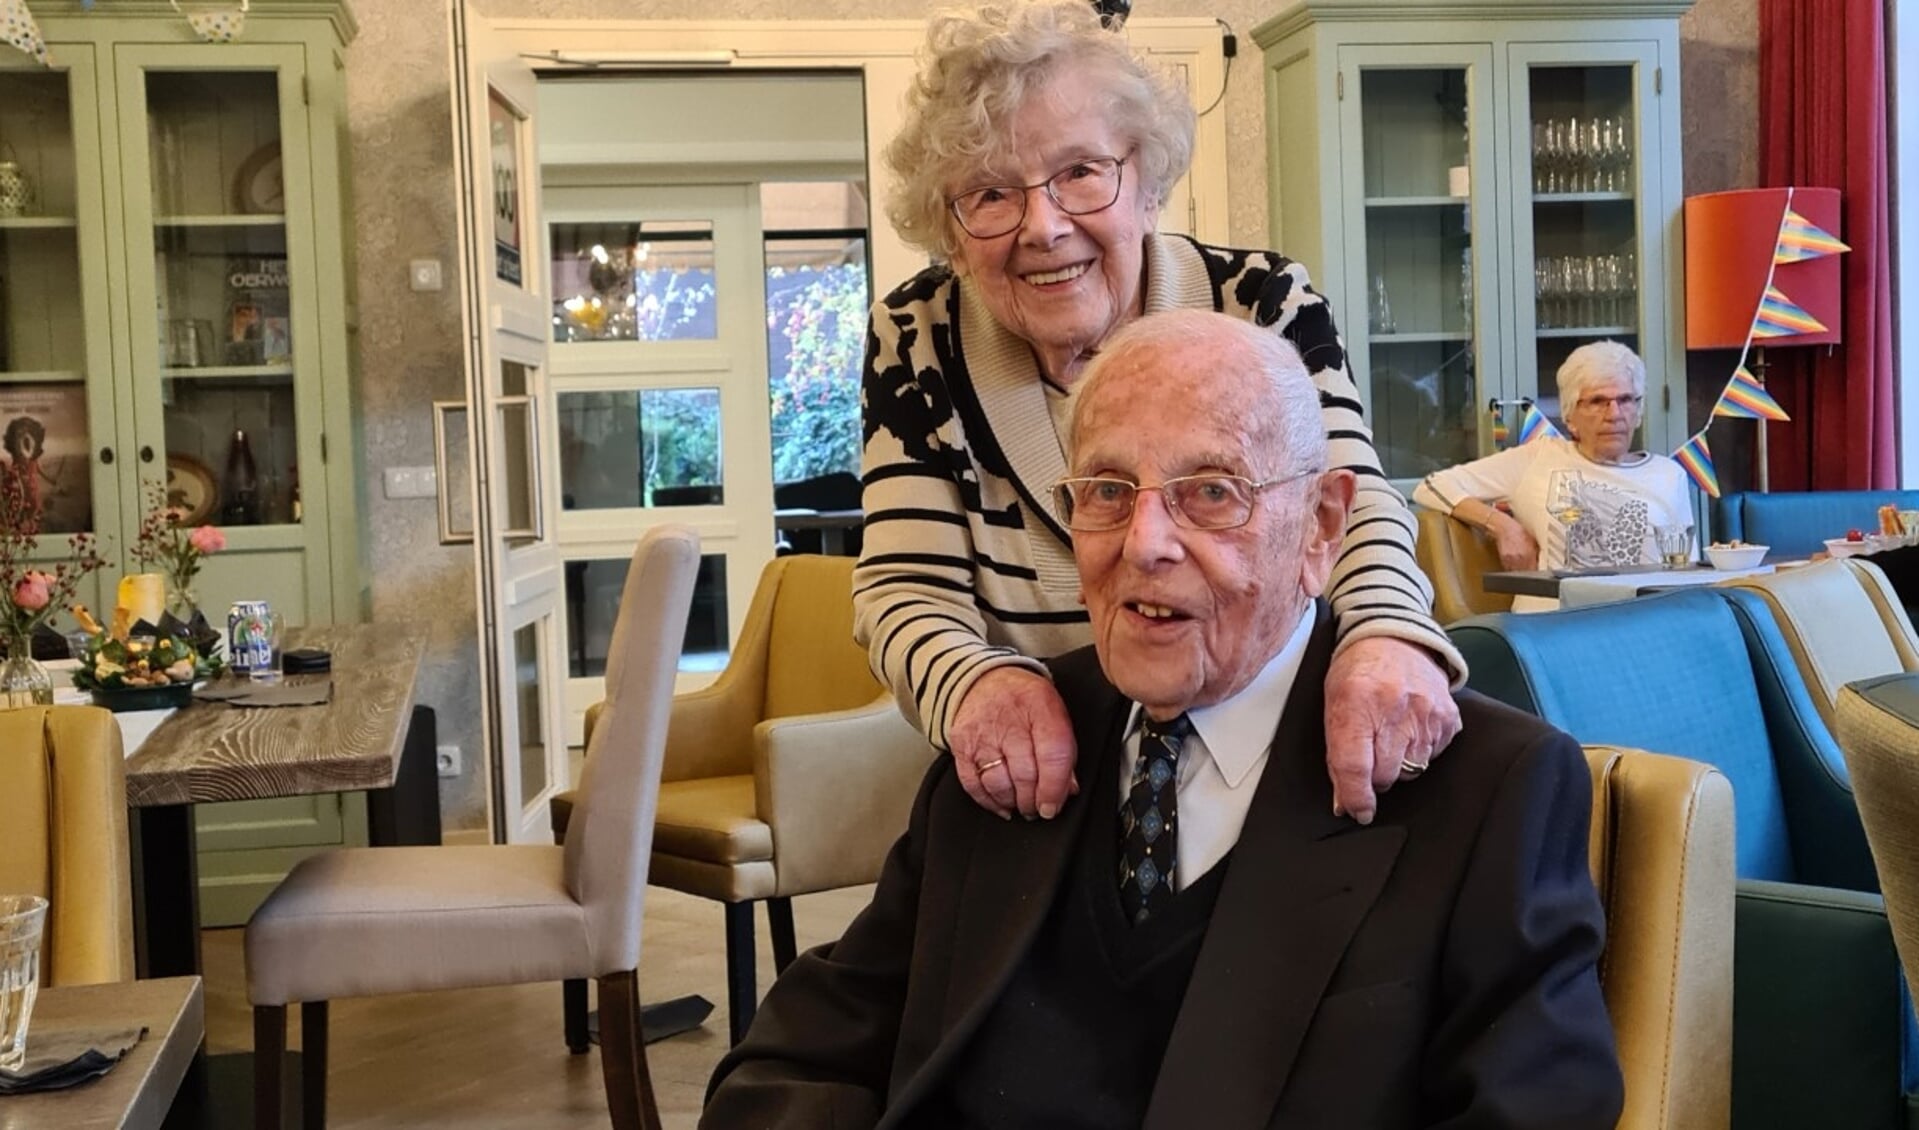 Sjef Serré uit Den Bosch vierde afgelopen zaterdag zijn honderdste verjaardag. Op de foto poseert hij samen met zijn zus Fien (93).